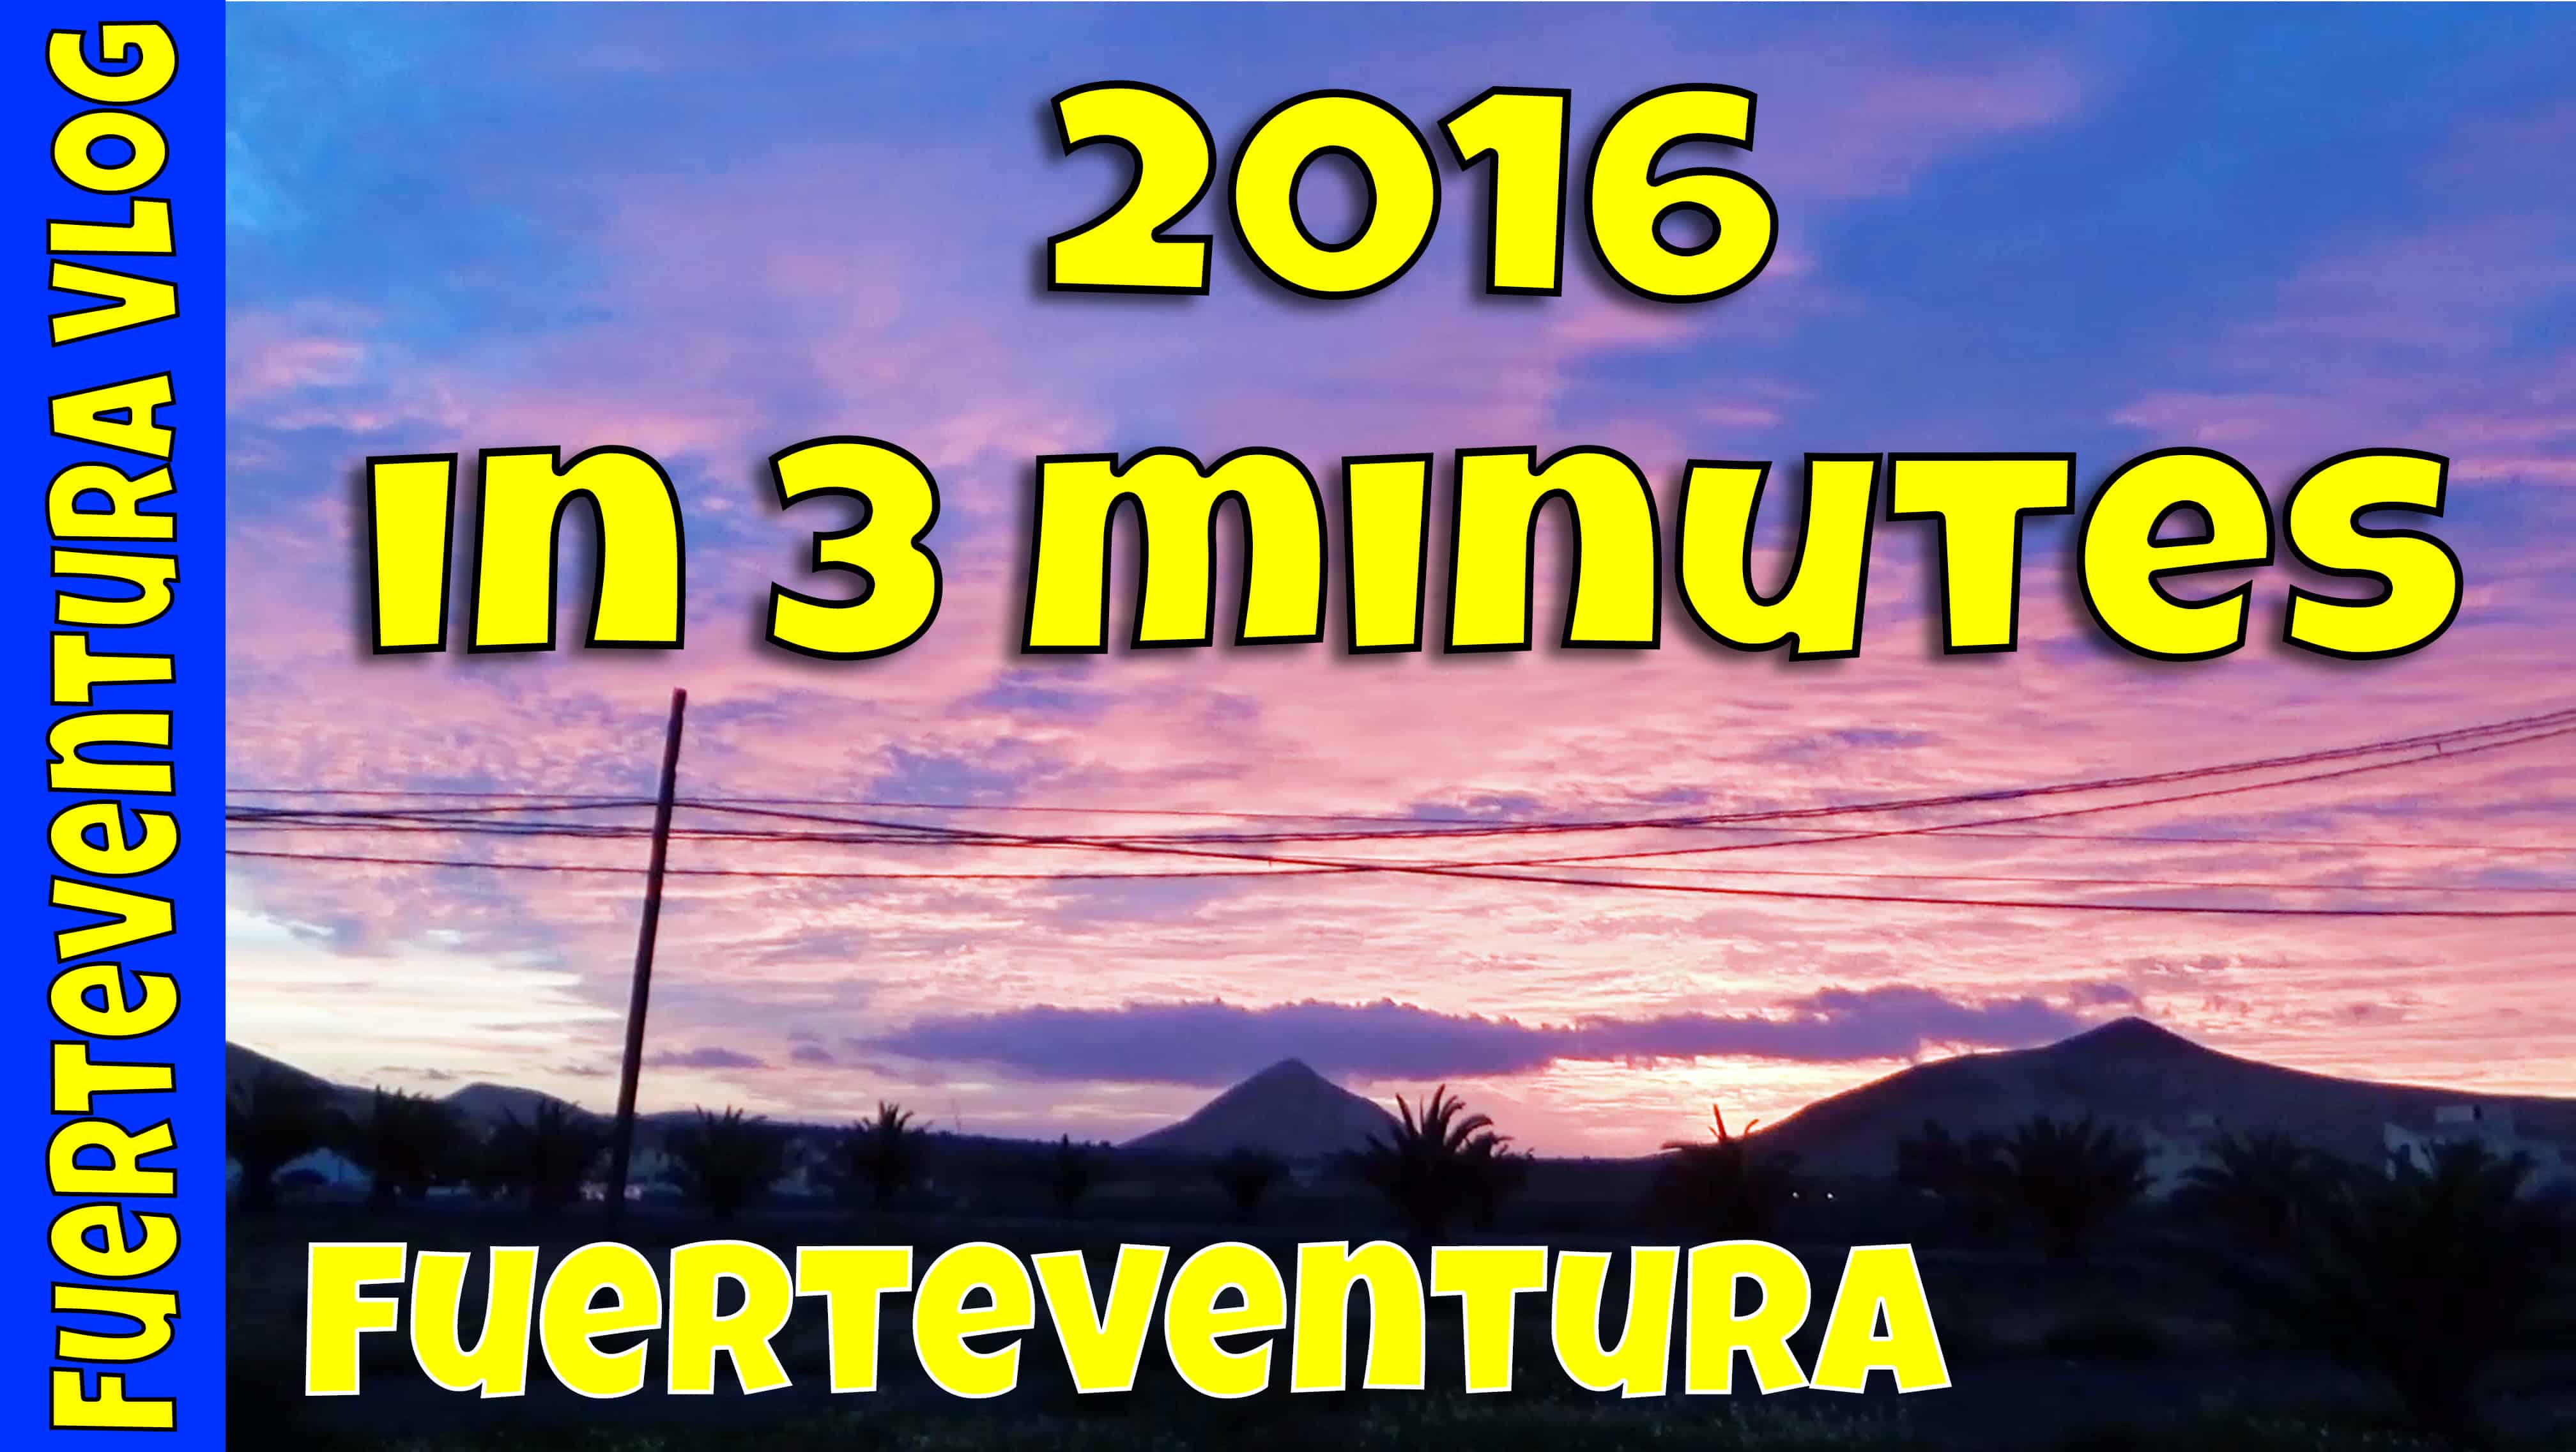 Fuerteventura - 2016 in 3 minutes